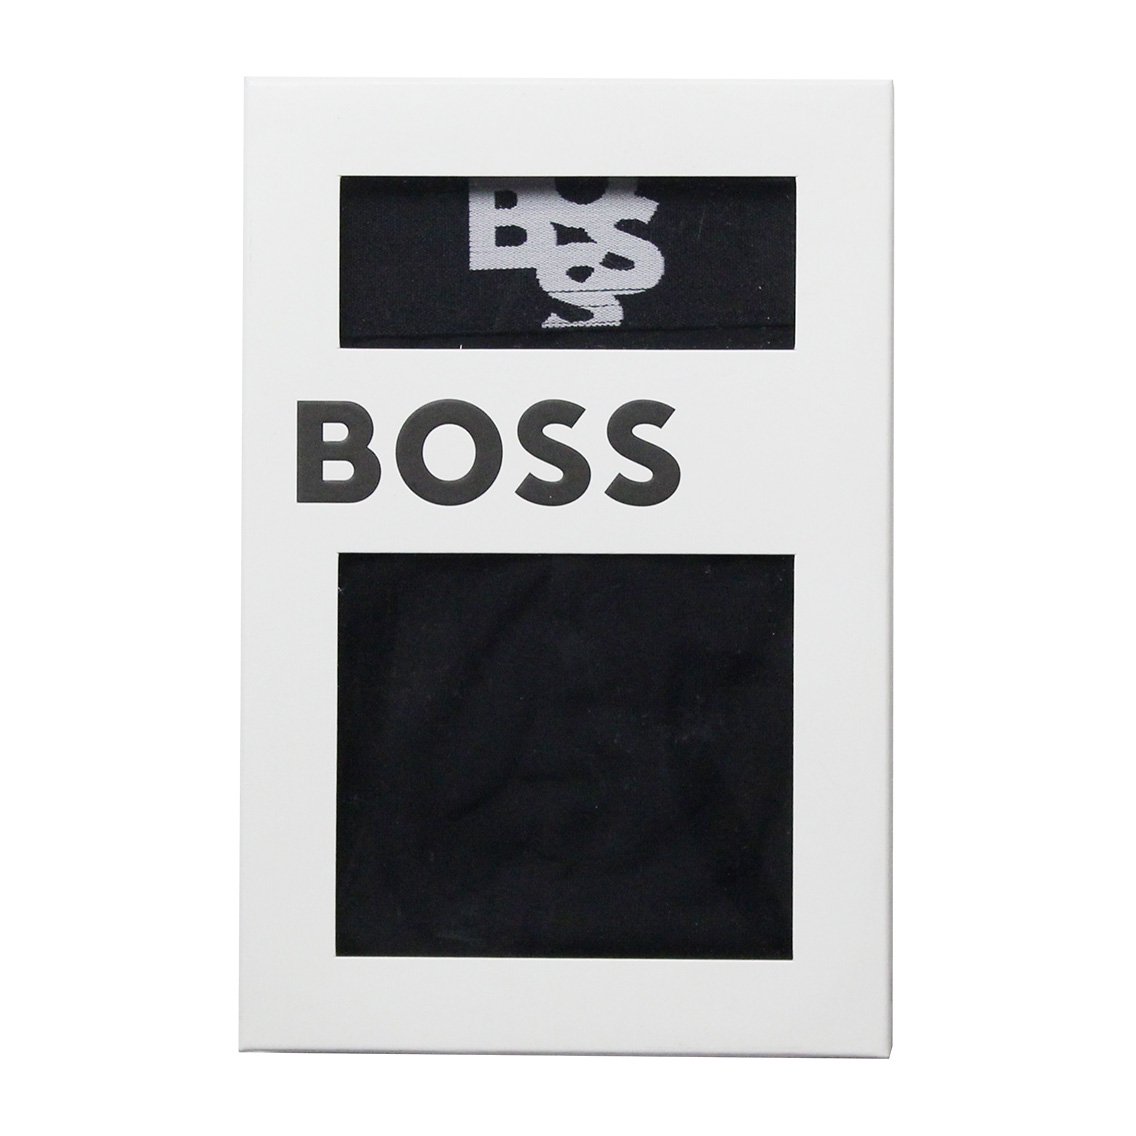  ヒューゴボス：BOSS ボクサーパンツ (ブラック)